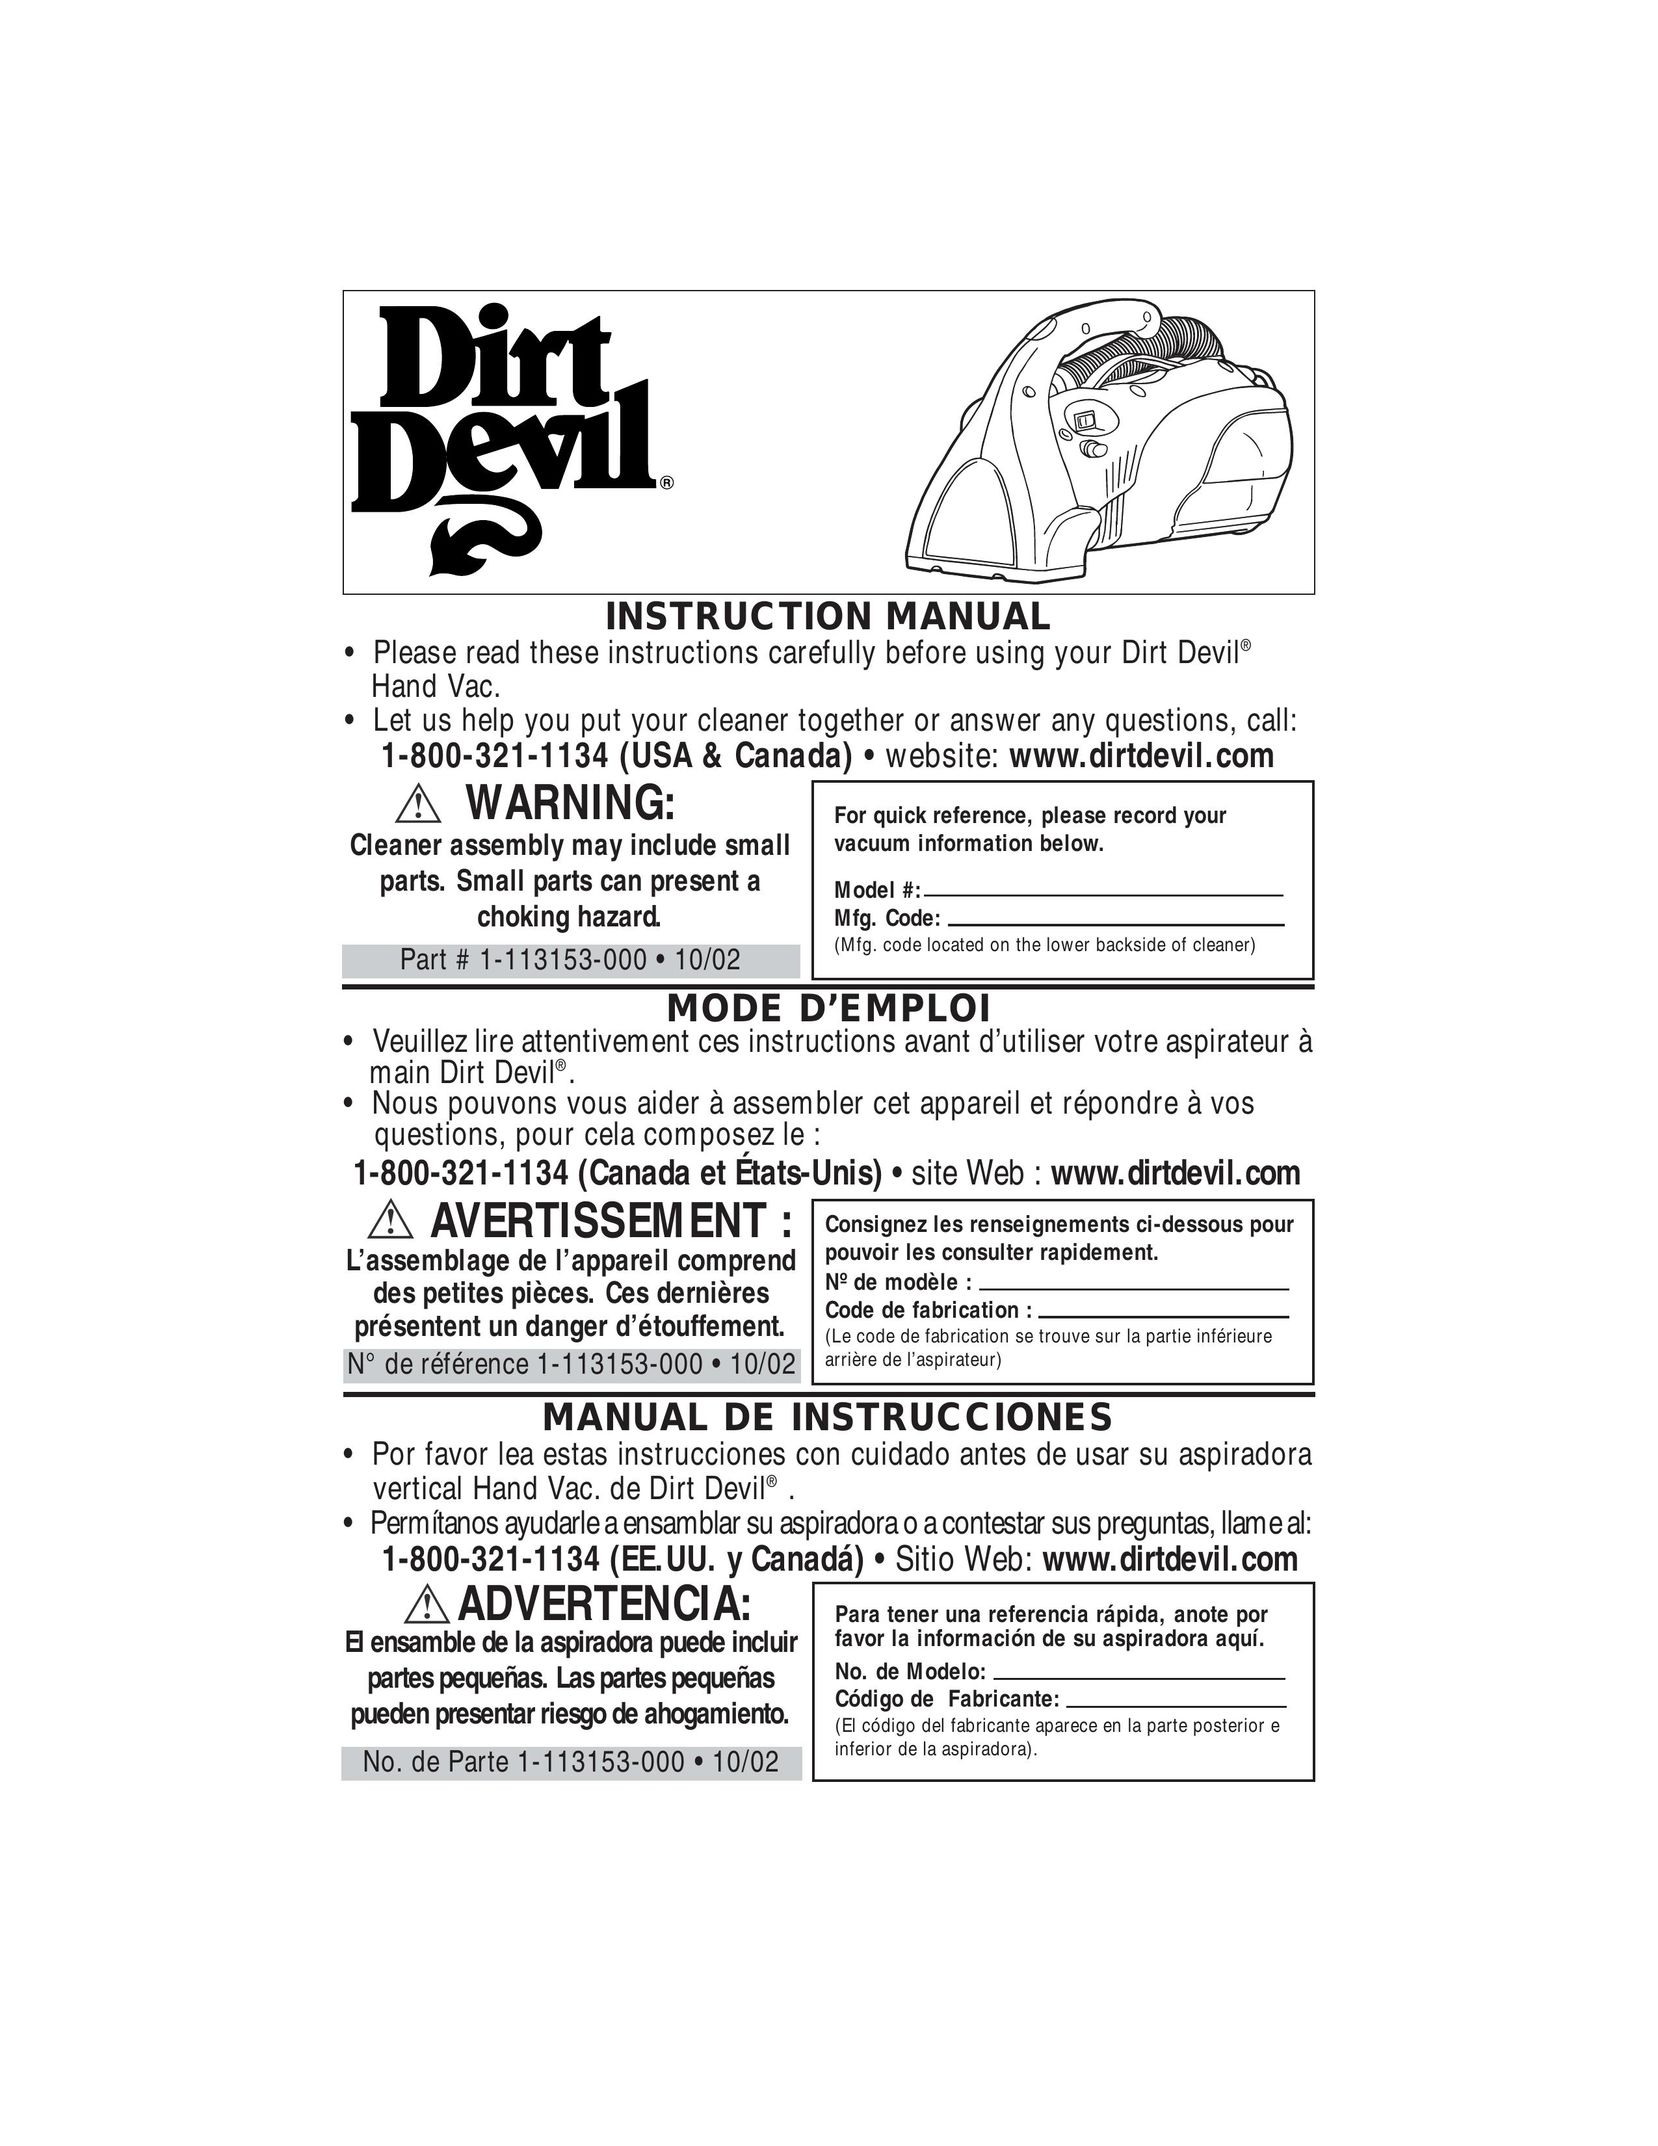 Dirt Devil Hand Vac Vacuum Cleaner User Manual